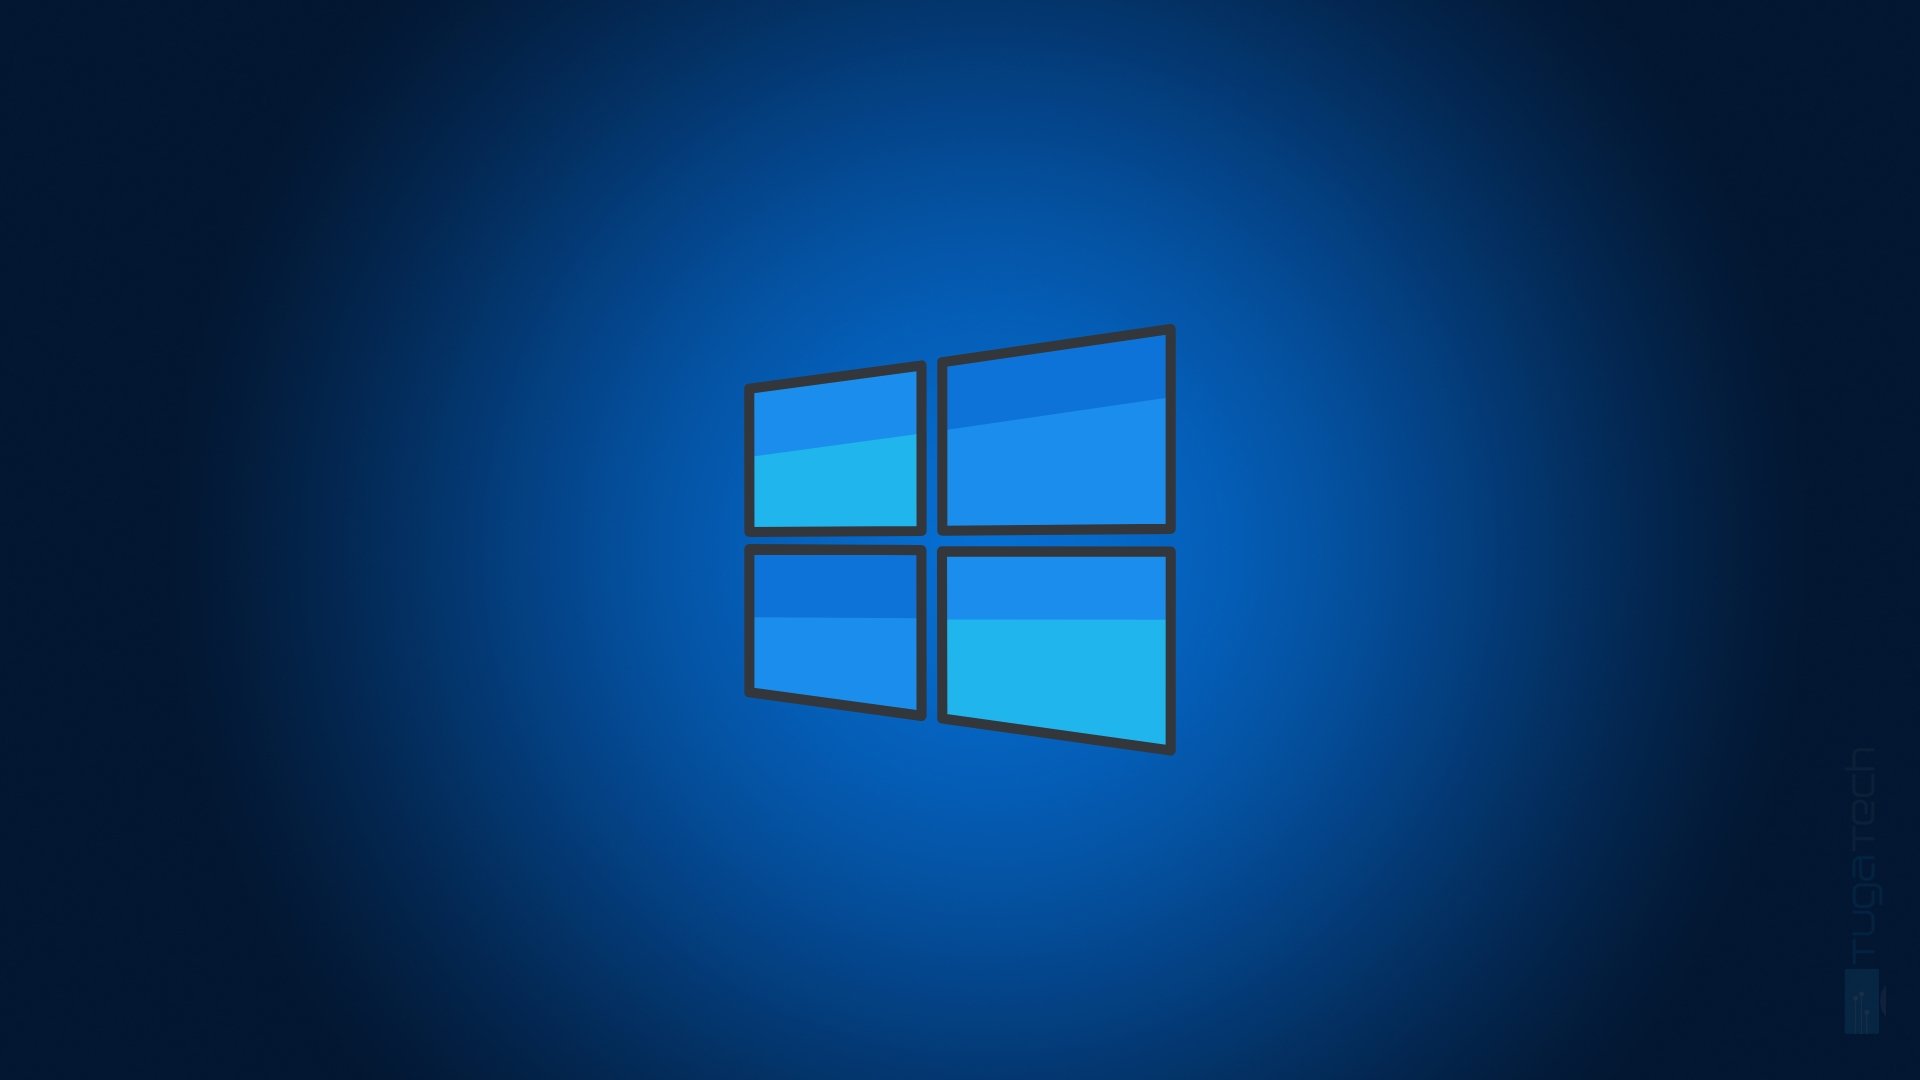 Windows logo em sistema azul